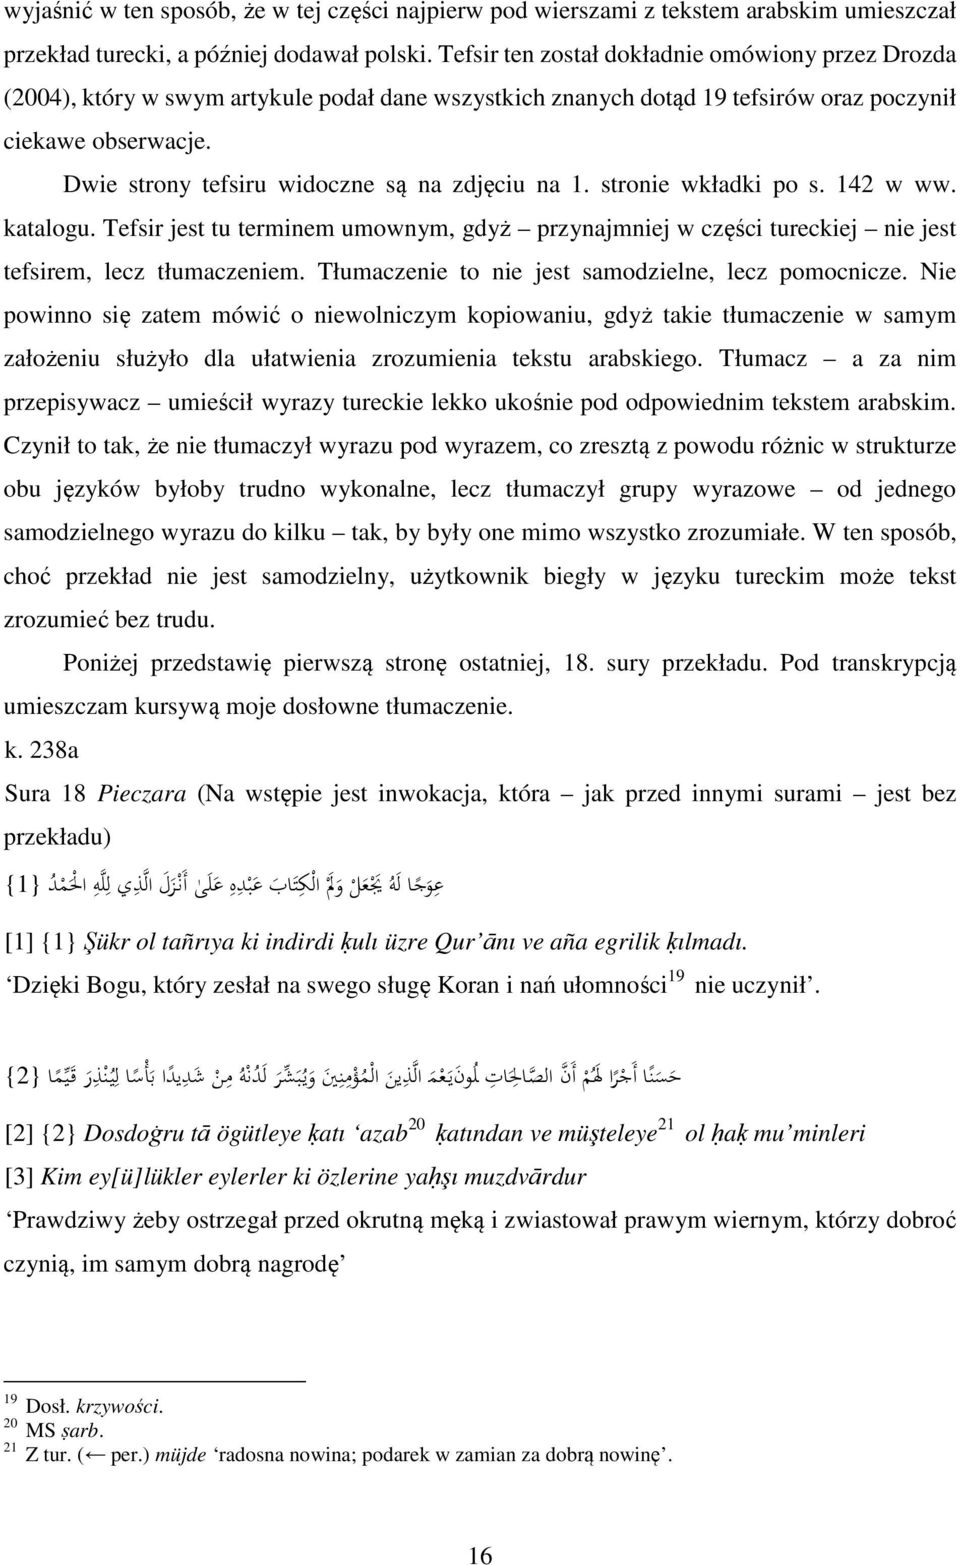 Dwie strony tefsiru widoczne są na zdjęciu na 1. stronie wkładki po s. 142 w ww. katalogu. Tefsir jest tu terminem umownym, gdyż przynajmniej w części tureckiej nie jest tefsirem, lecz tłumaczeniem.